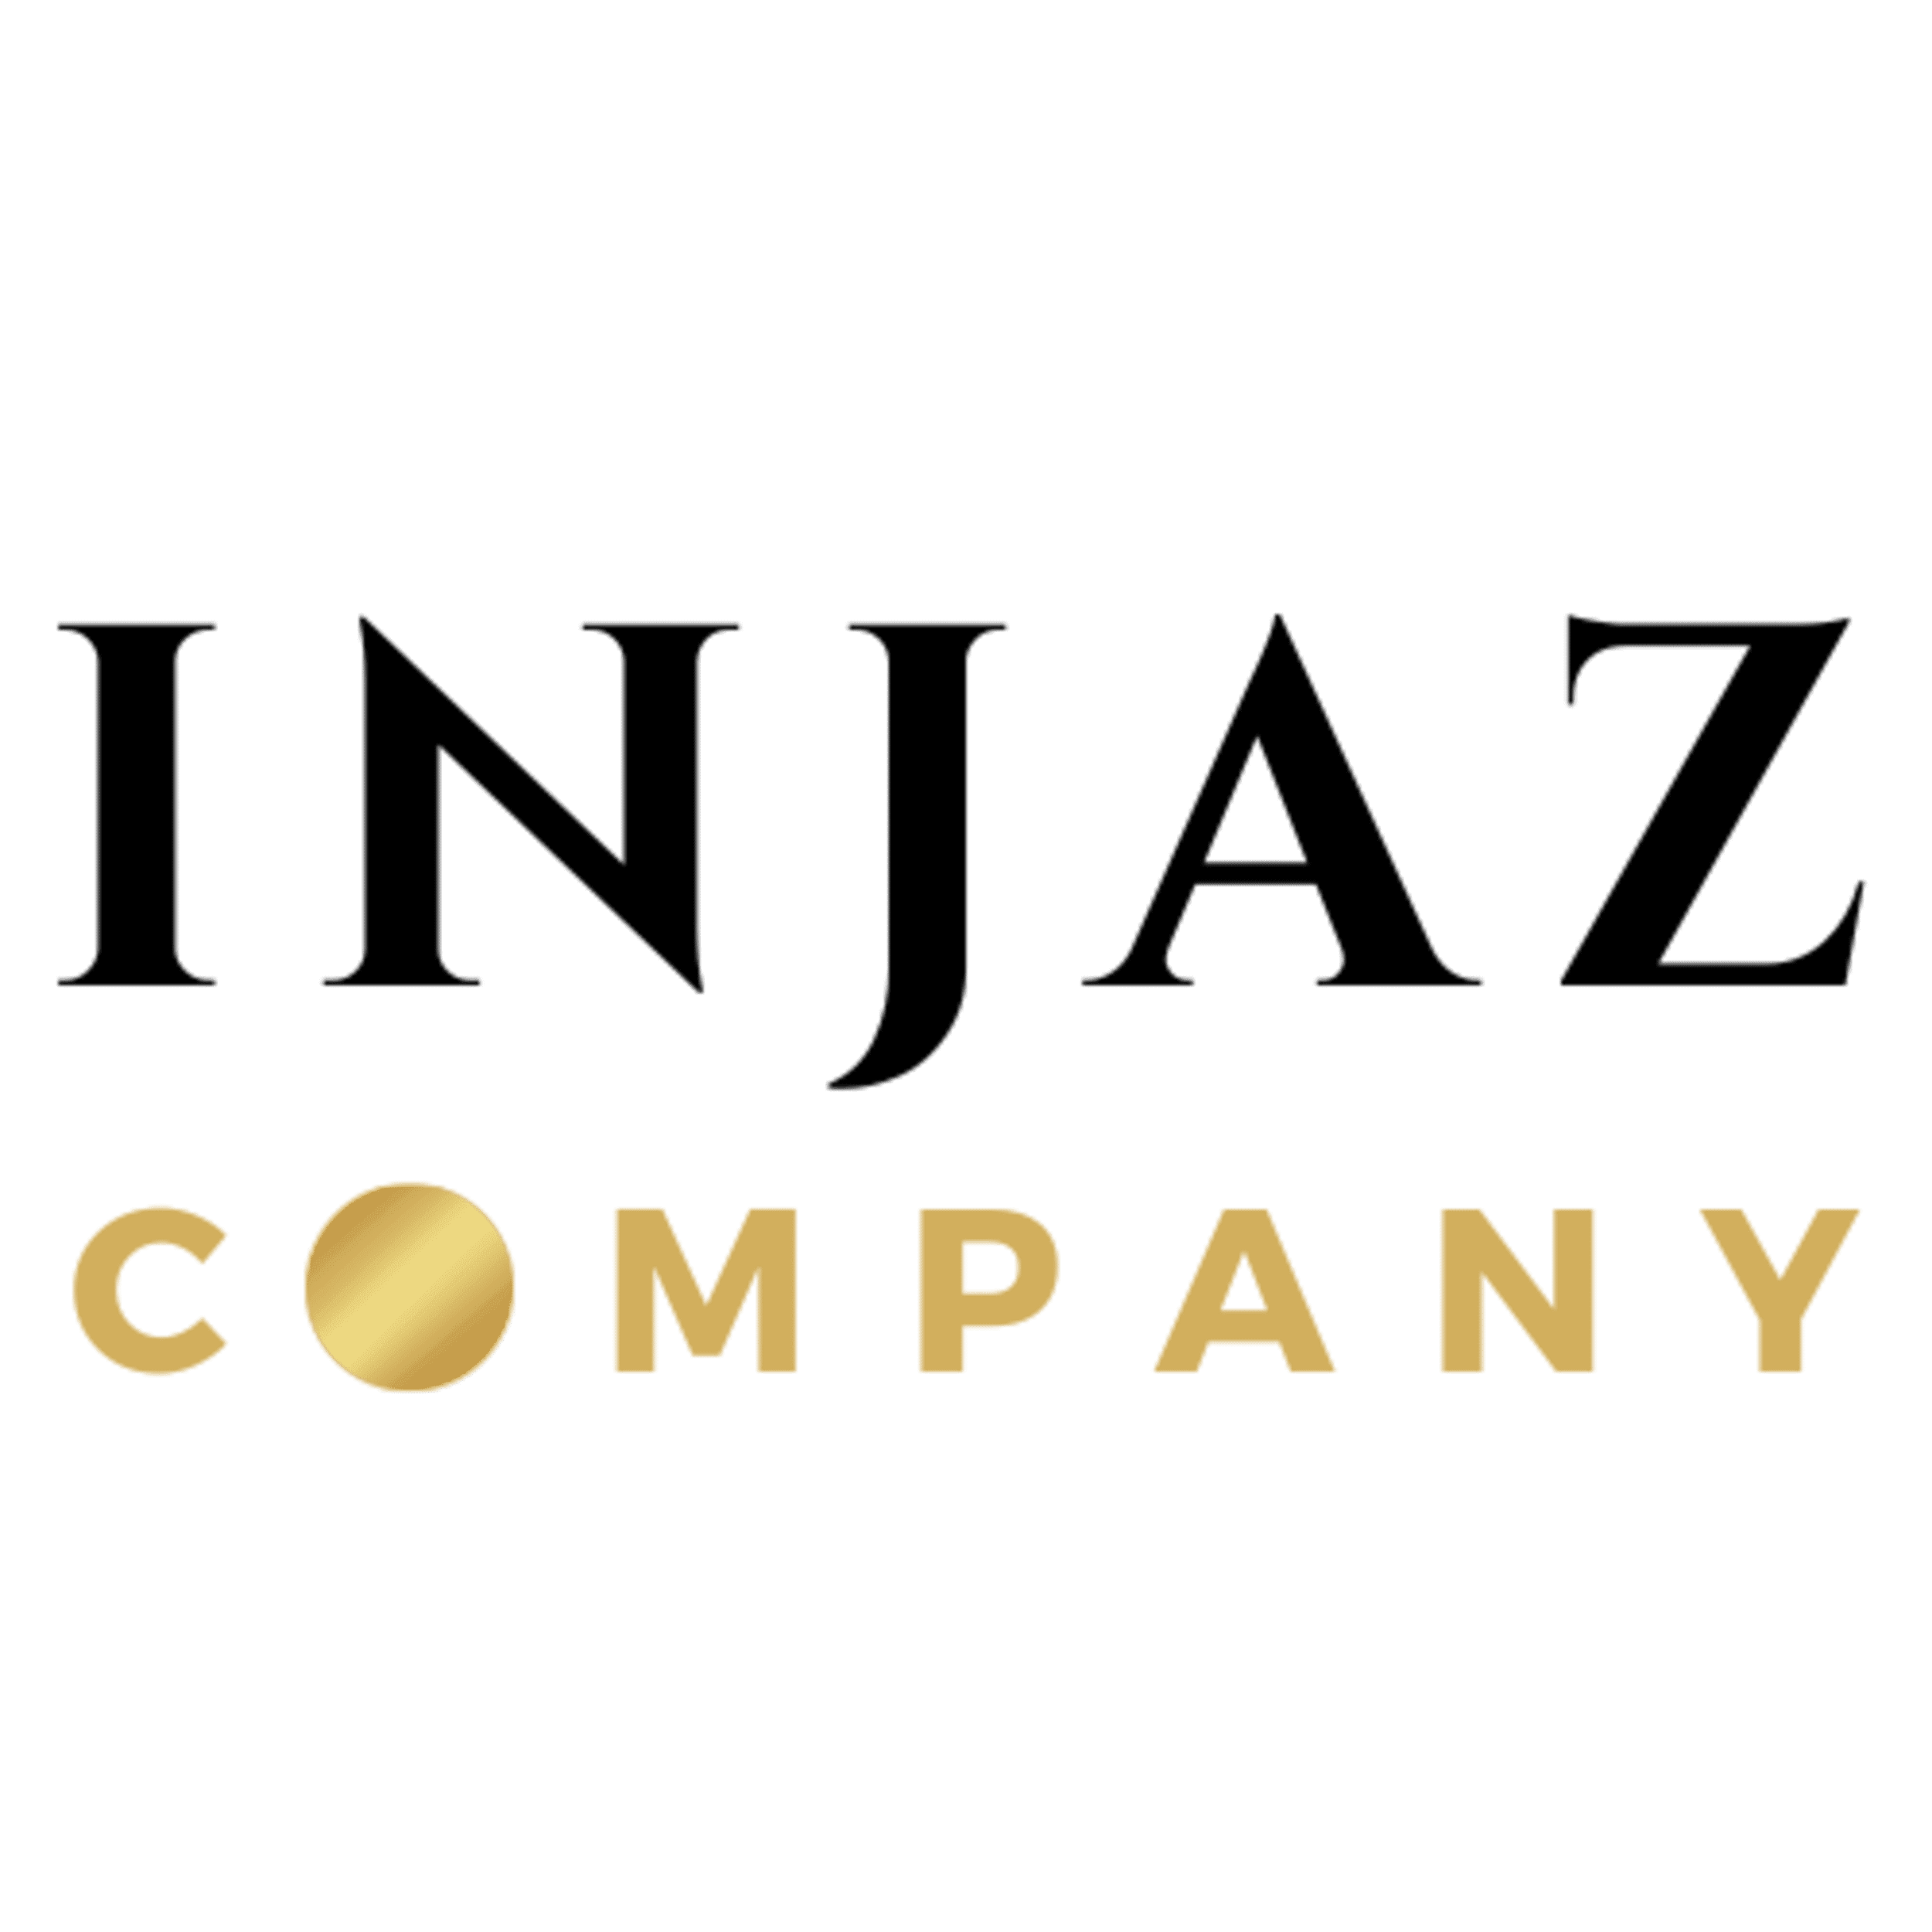 Injaz Company